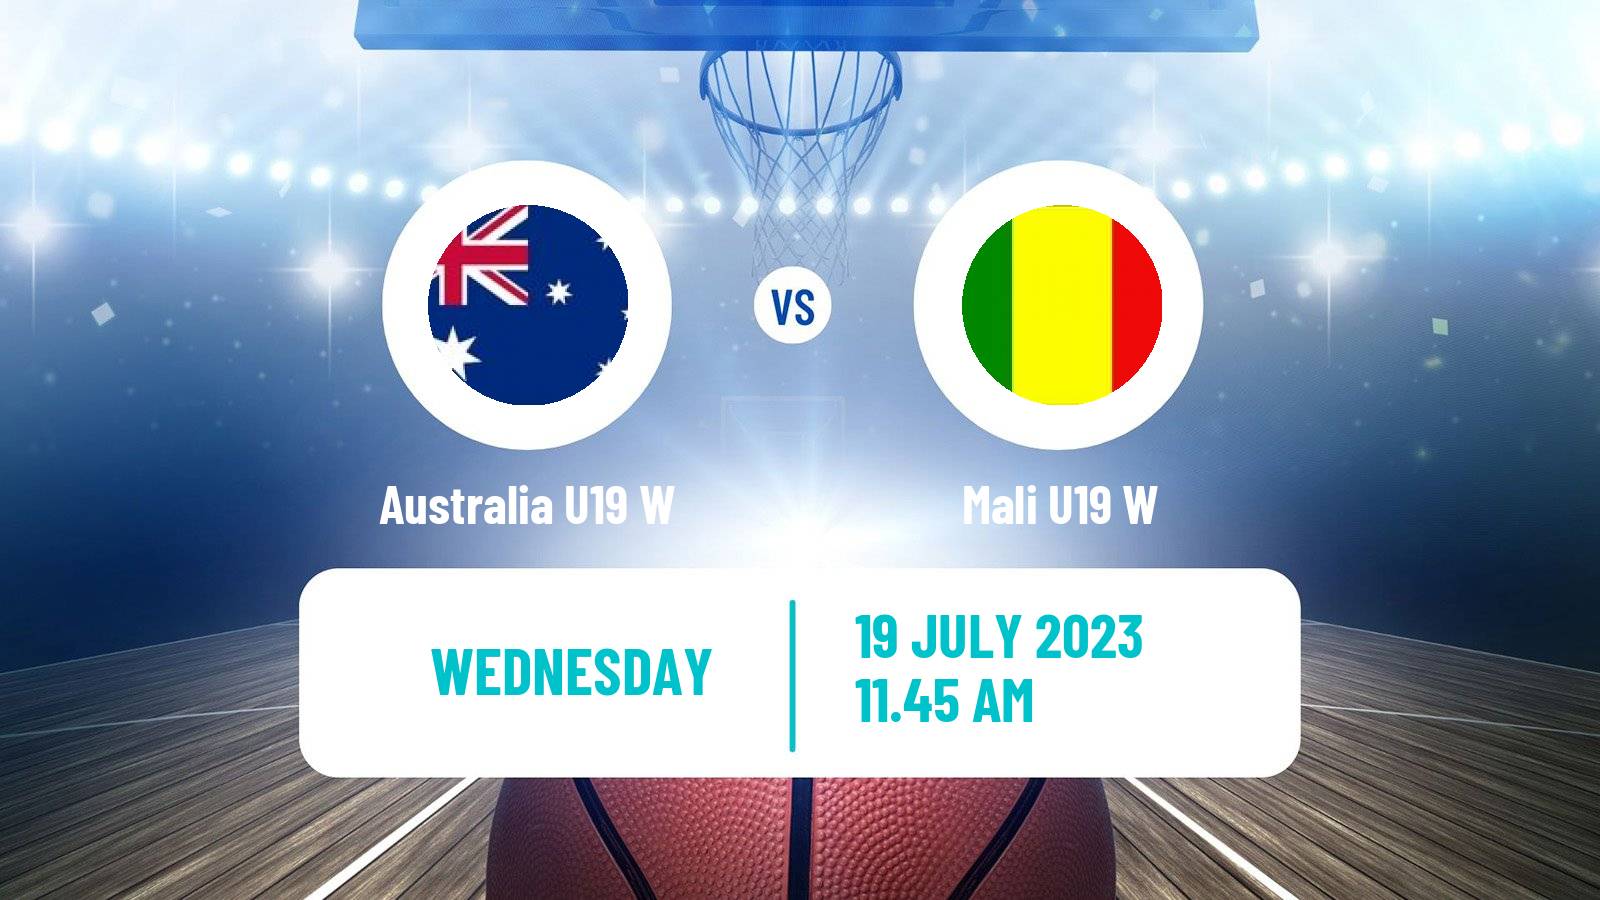 Basketball World Championship U19 Basketball Women Australia U19 W - Mali U19 W